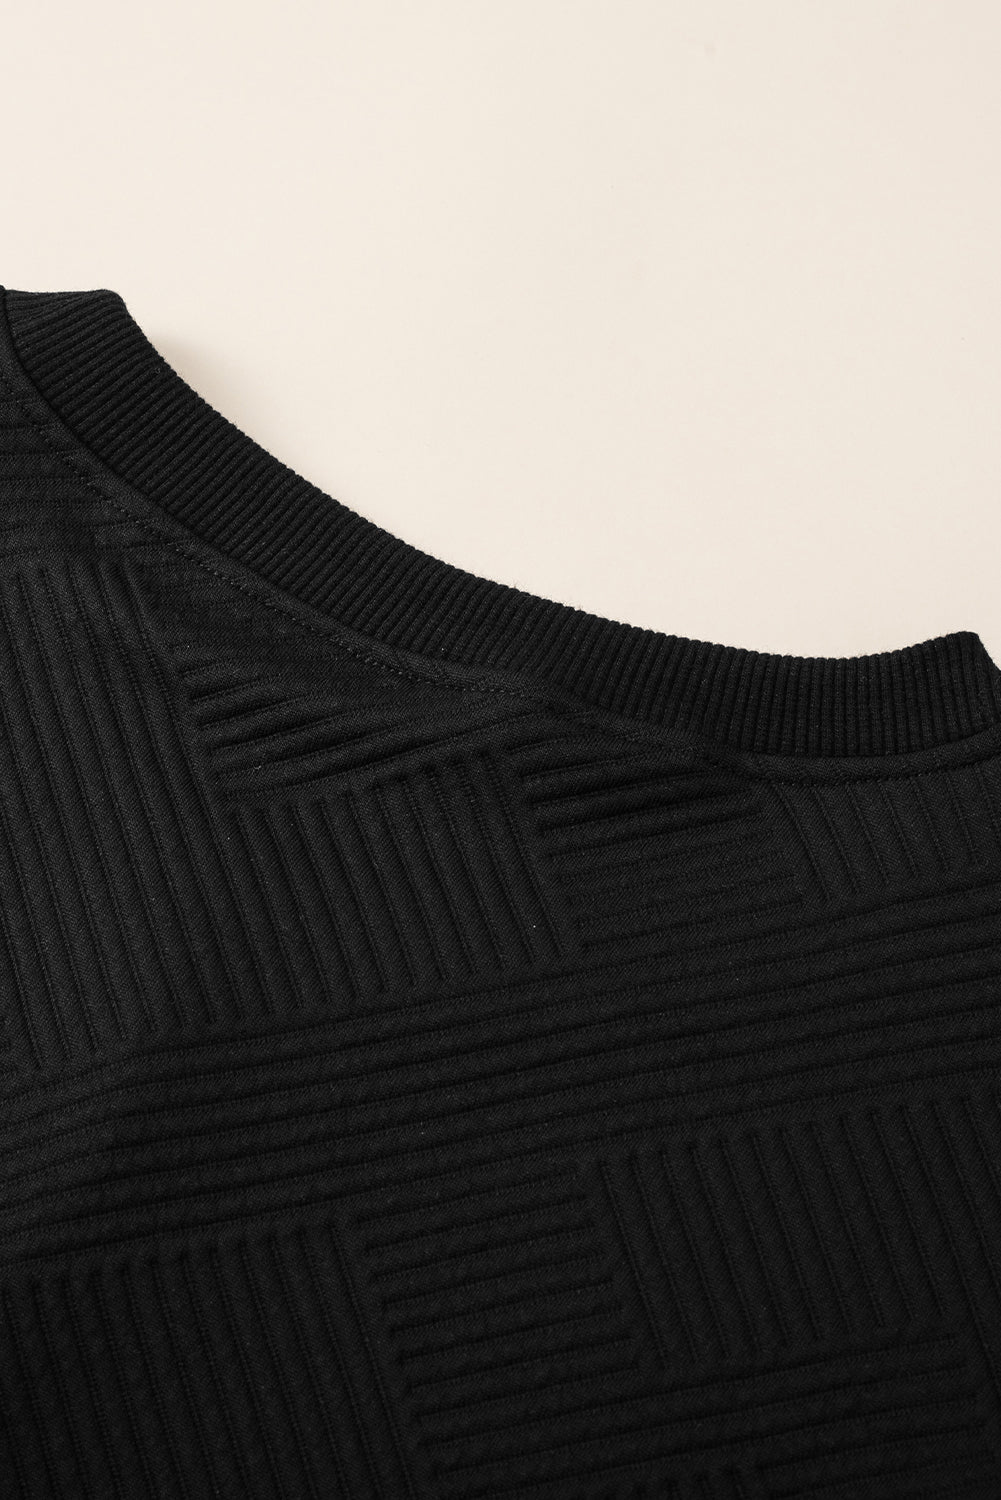 Gornji dio spuštenih ramena s teksturom u crnoj boji